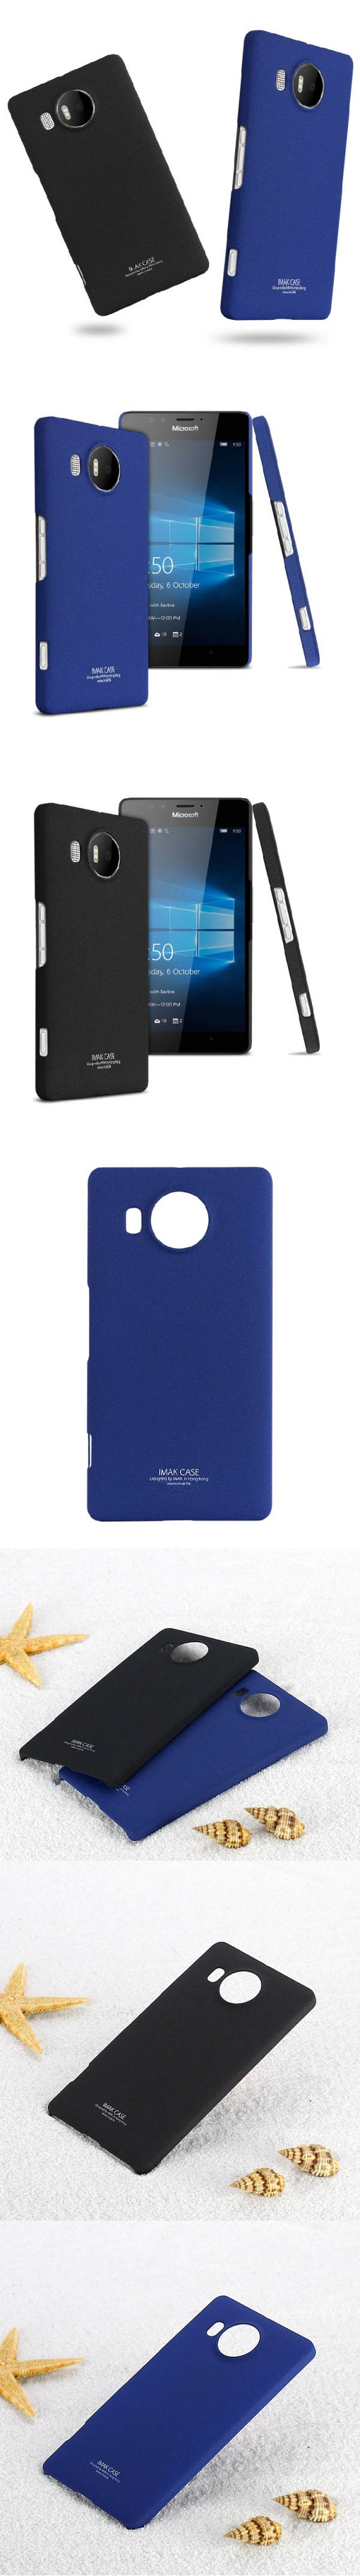 Ốp lưng Lumia 950 XL imak Cowboy vân cát 3